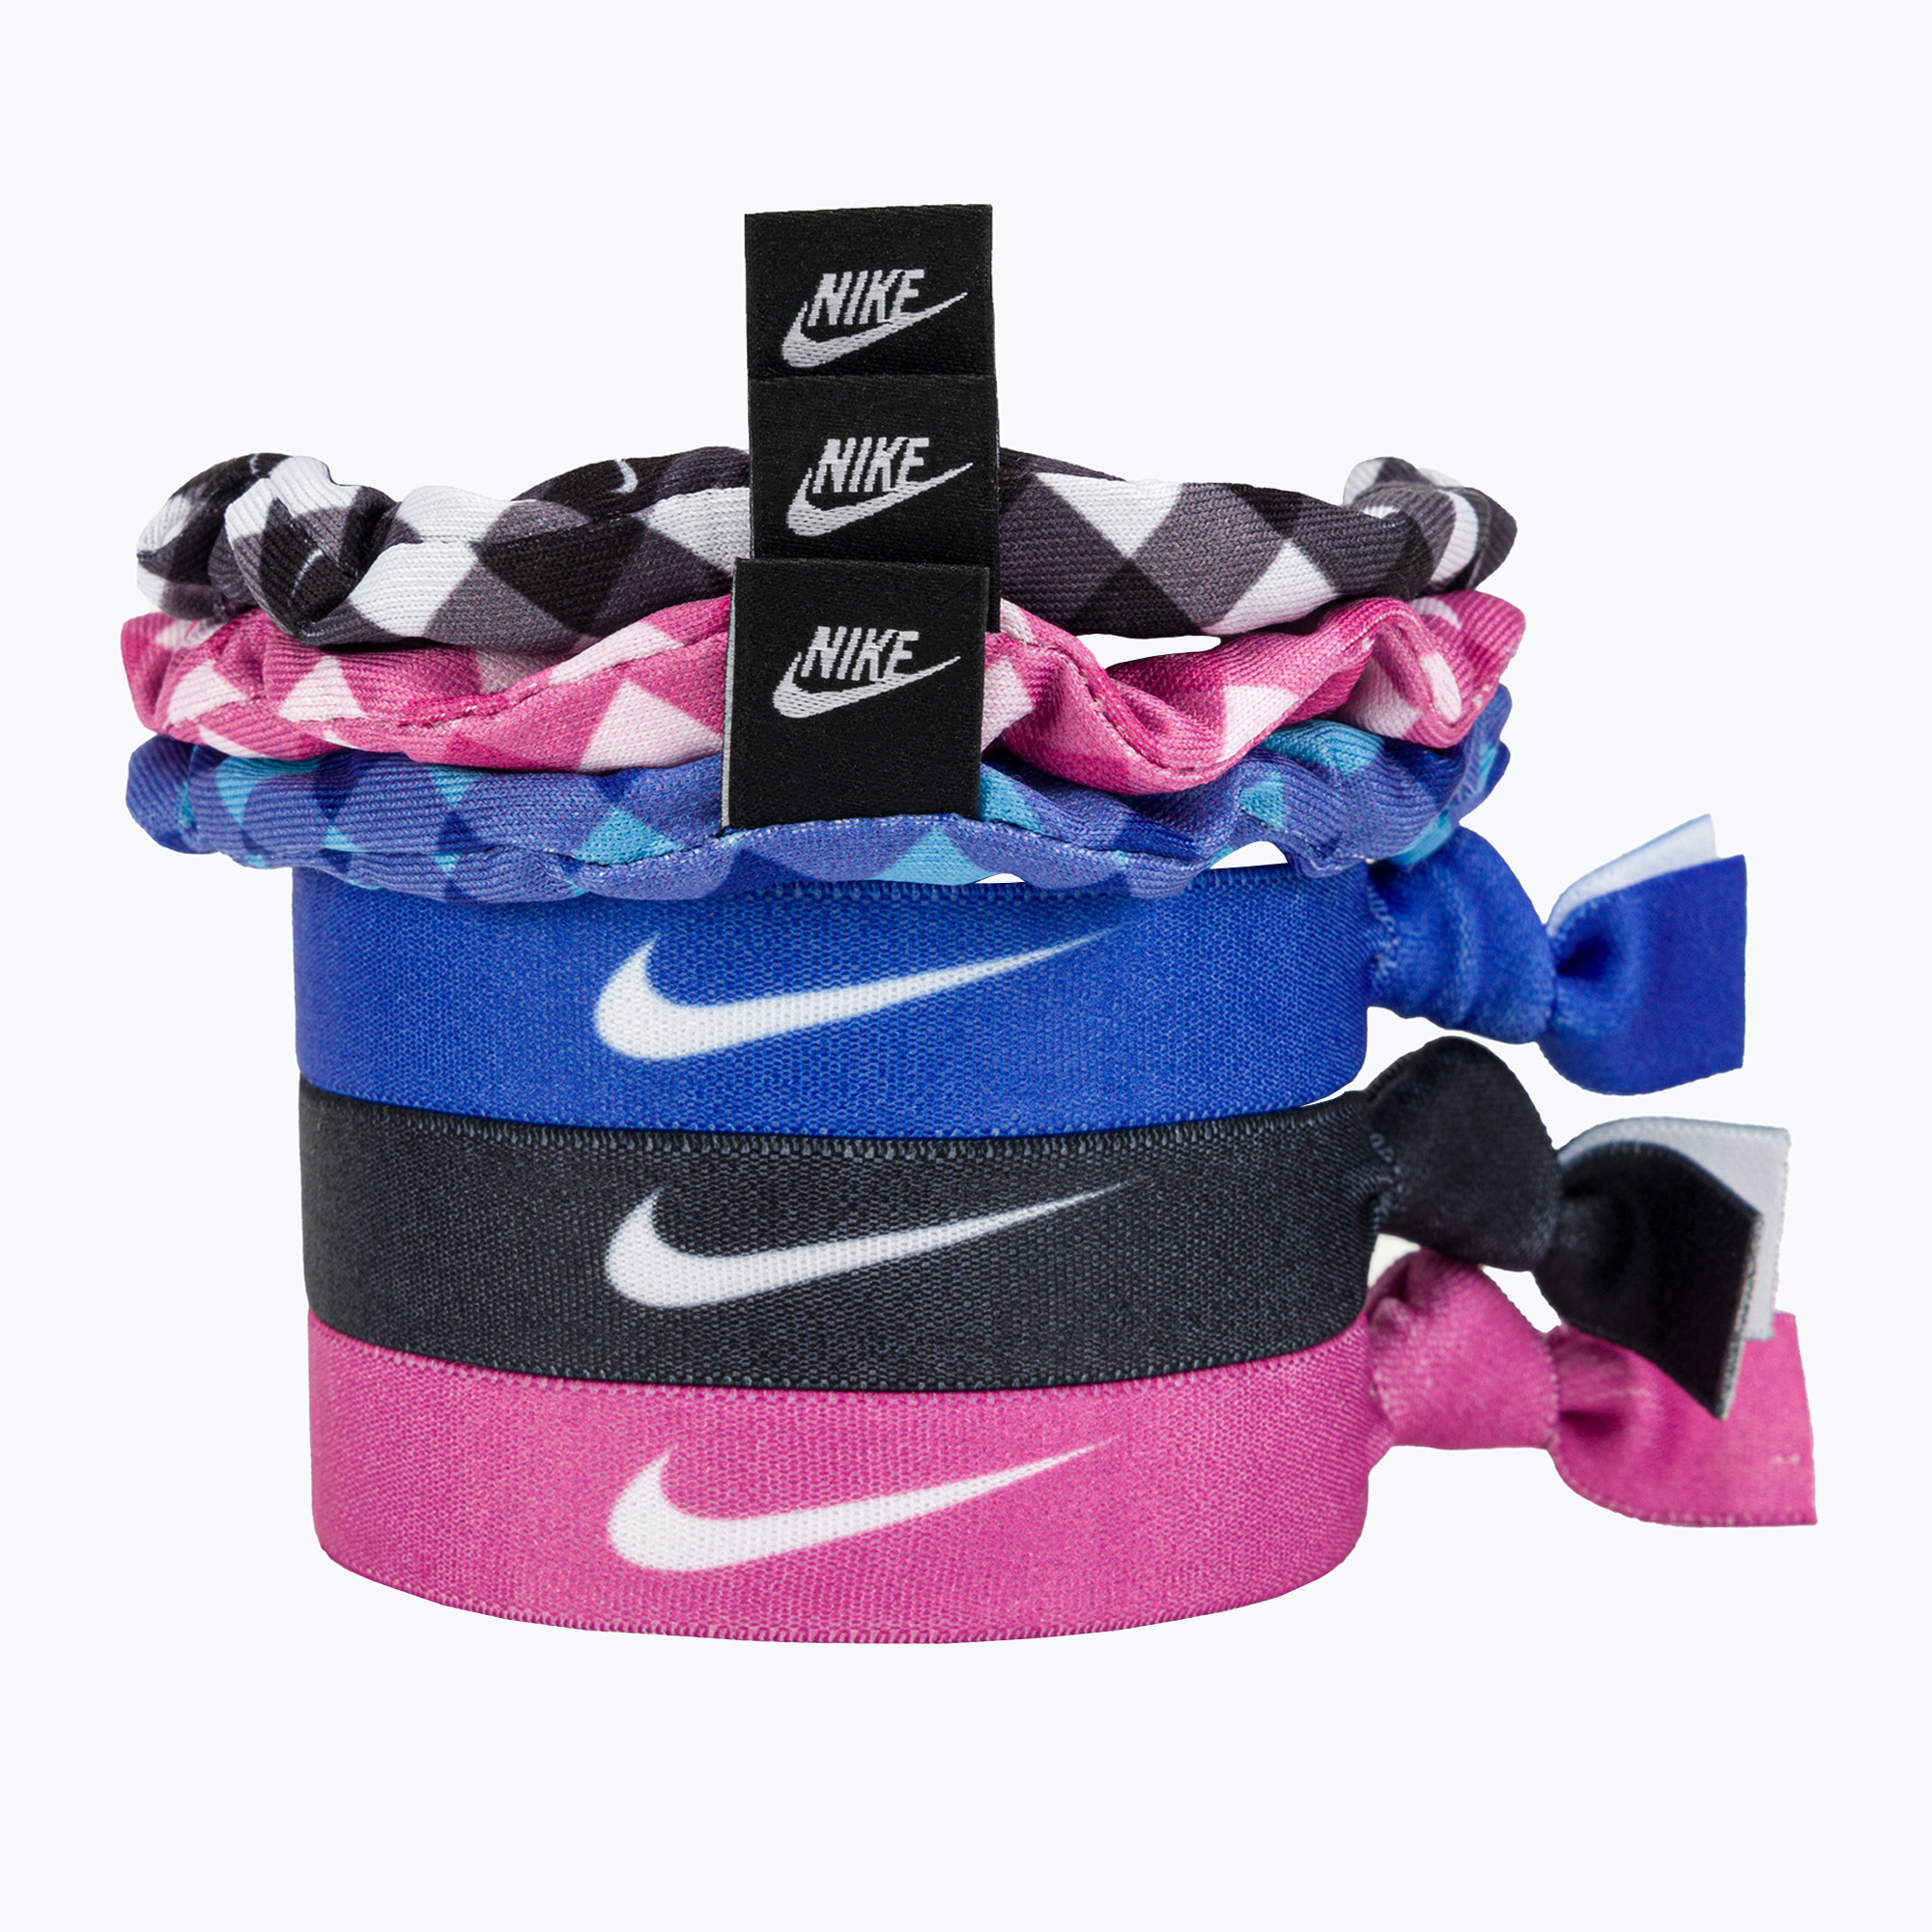 Benzi de păr Nike Mixed Hairbands 6 buc. cu husă elastice de păr colorate 6 buc. N1003666-029